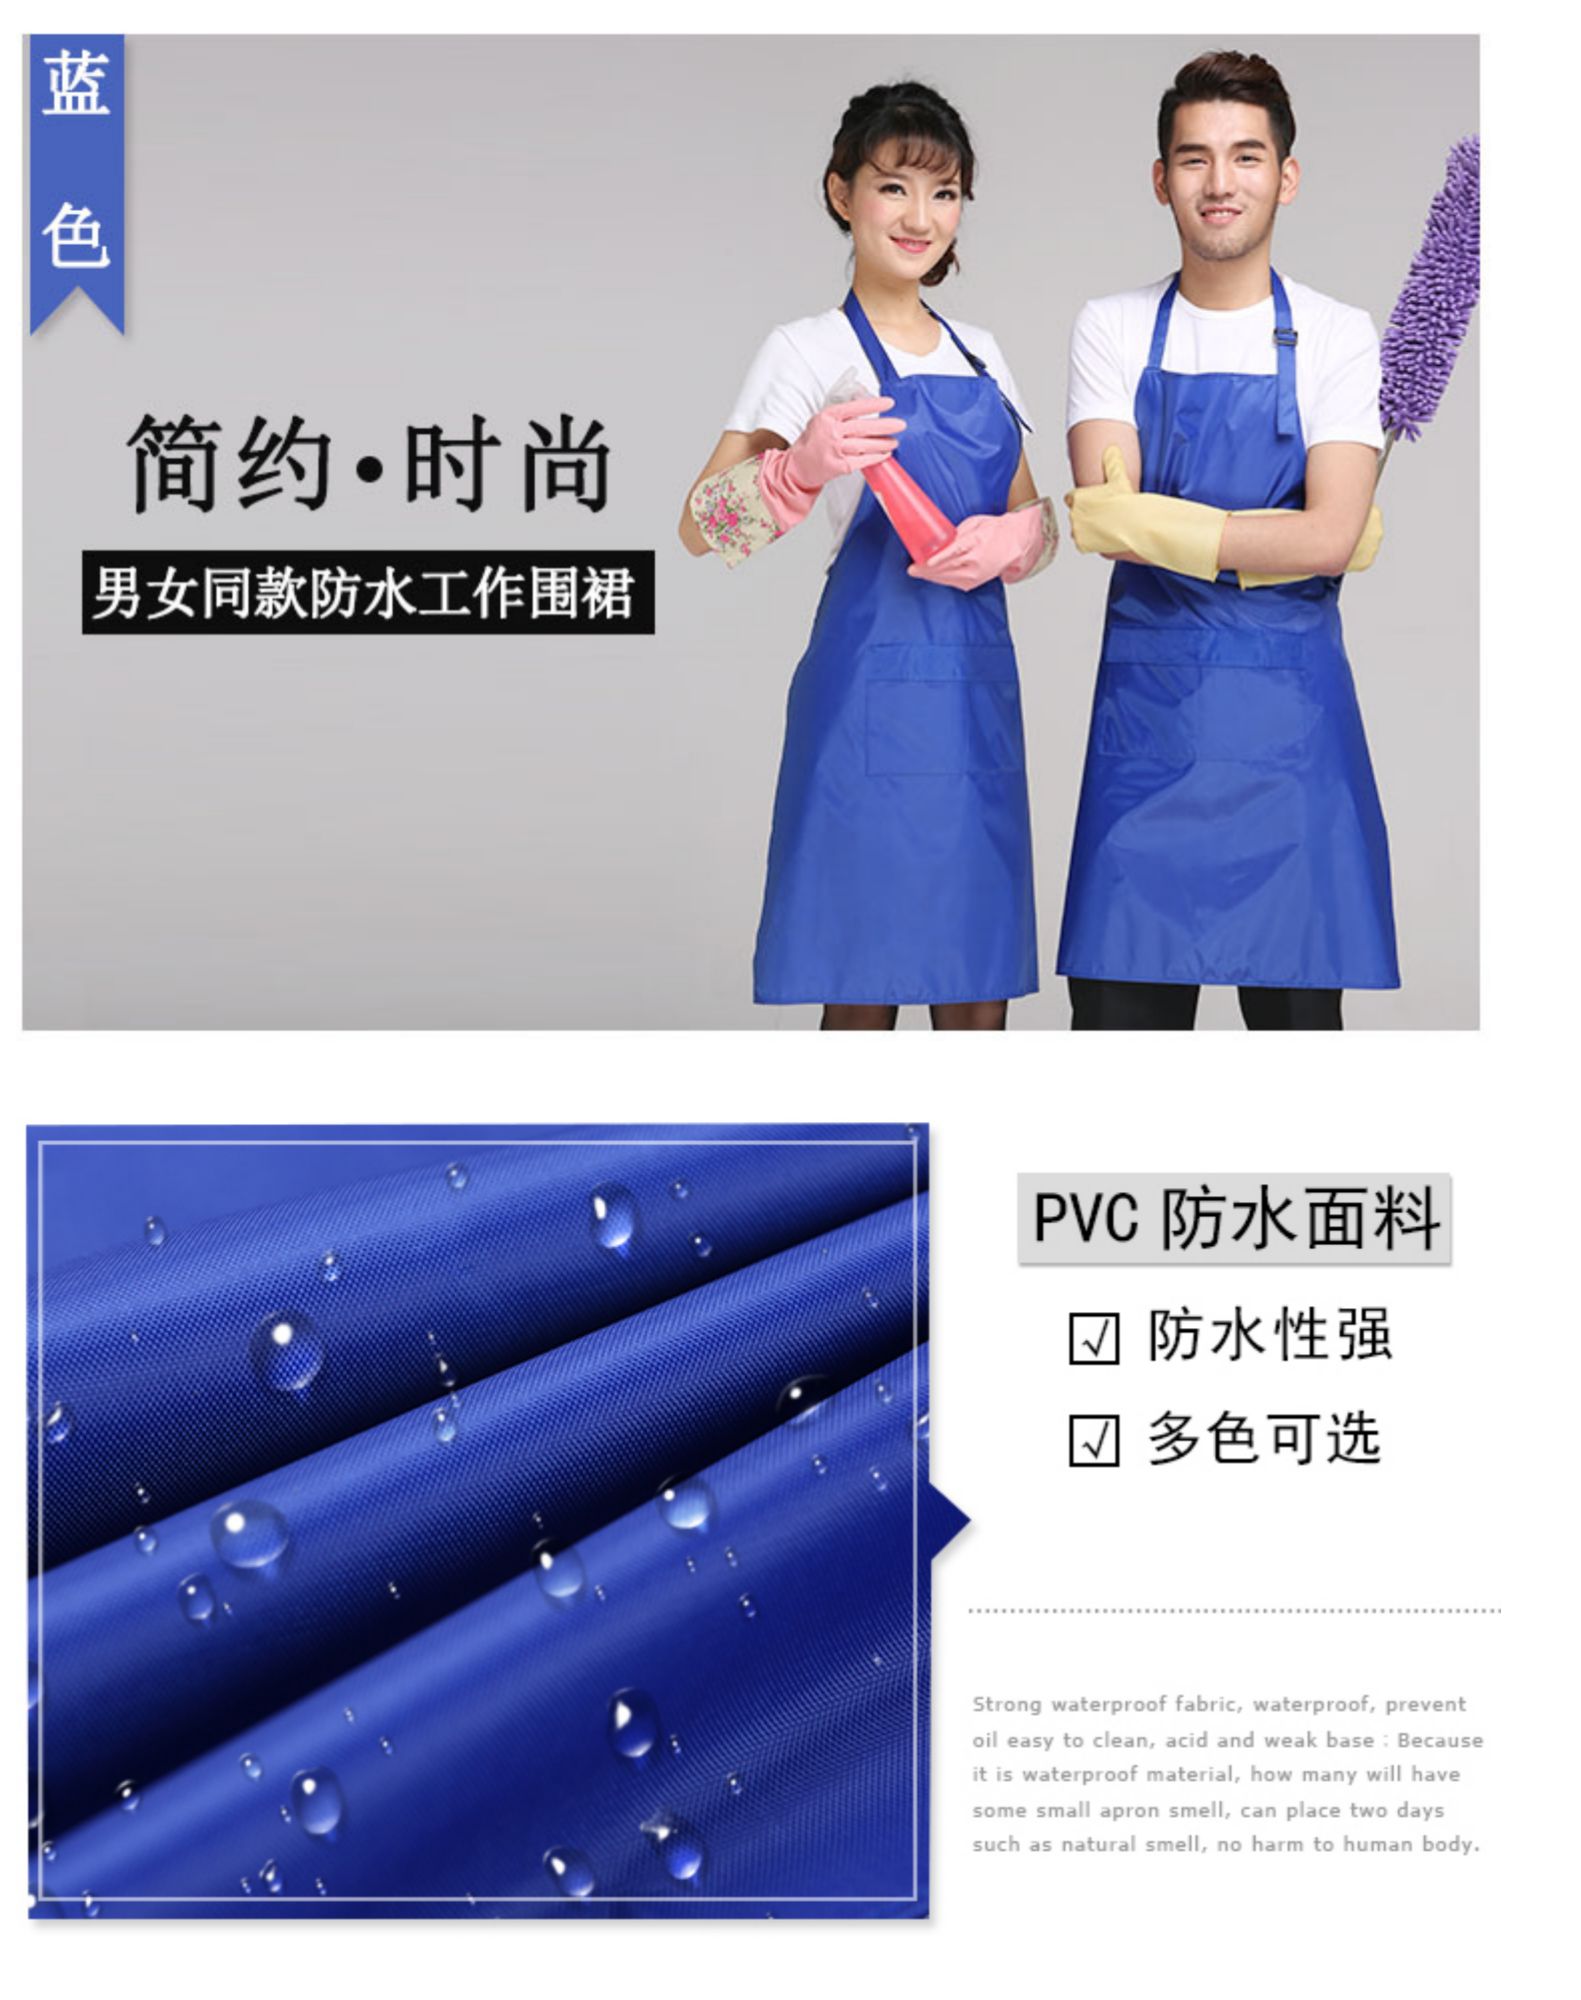 圍裙 防水PVC廚房簡約工作服韓版時尚防水廚師圍裙男女定制(圖6)